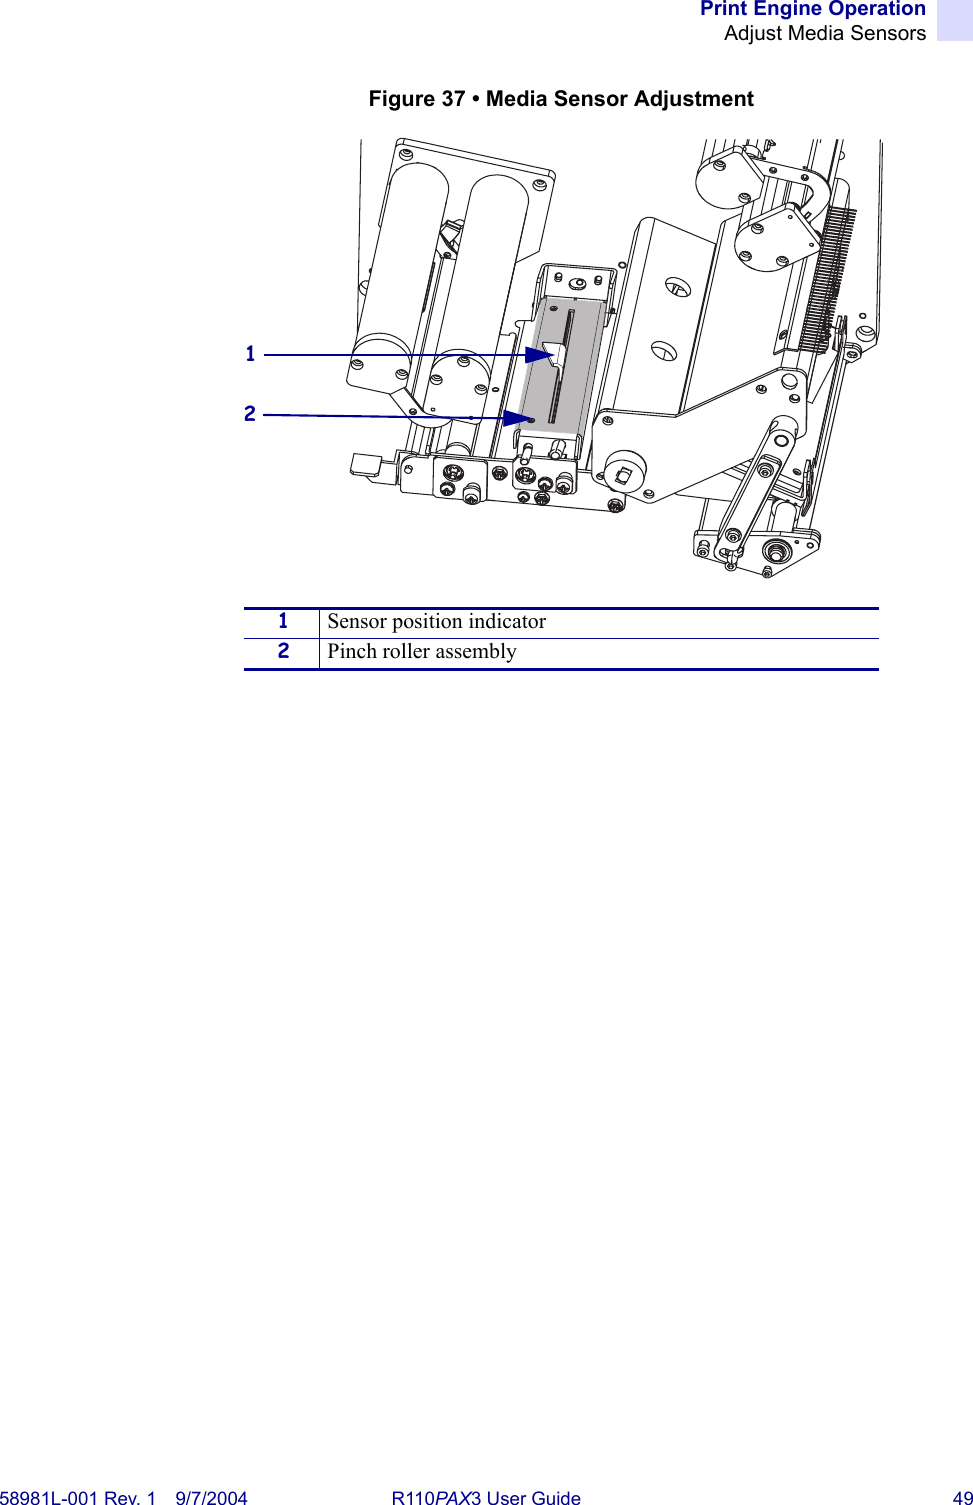 Print Engine OperationAdjust Media Sensors58981L-001 Rev. 1 9/7/2004 R110PAX3 User Guide 49Figure 37 • Media Sensor Adjustment1Sensor position indicator2Pinch roller assembly12